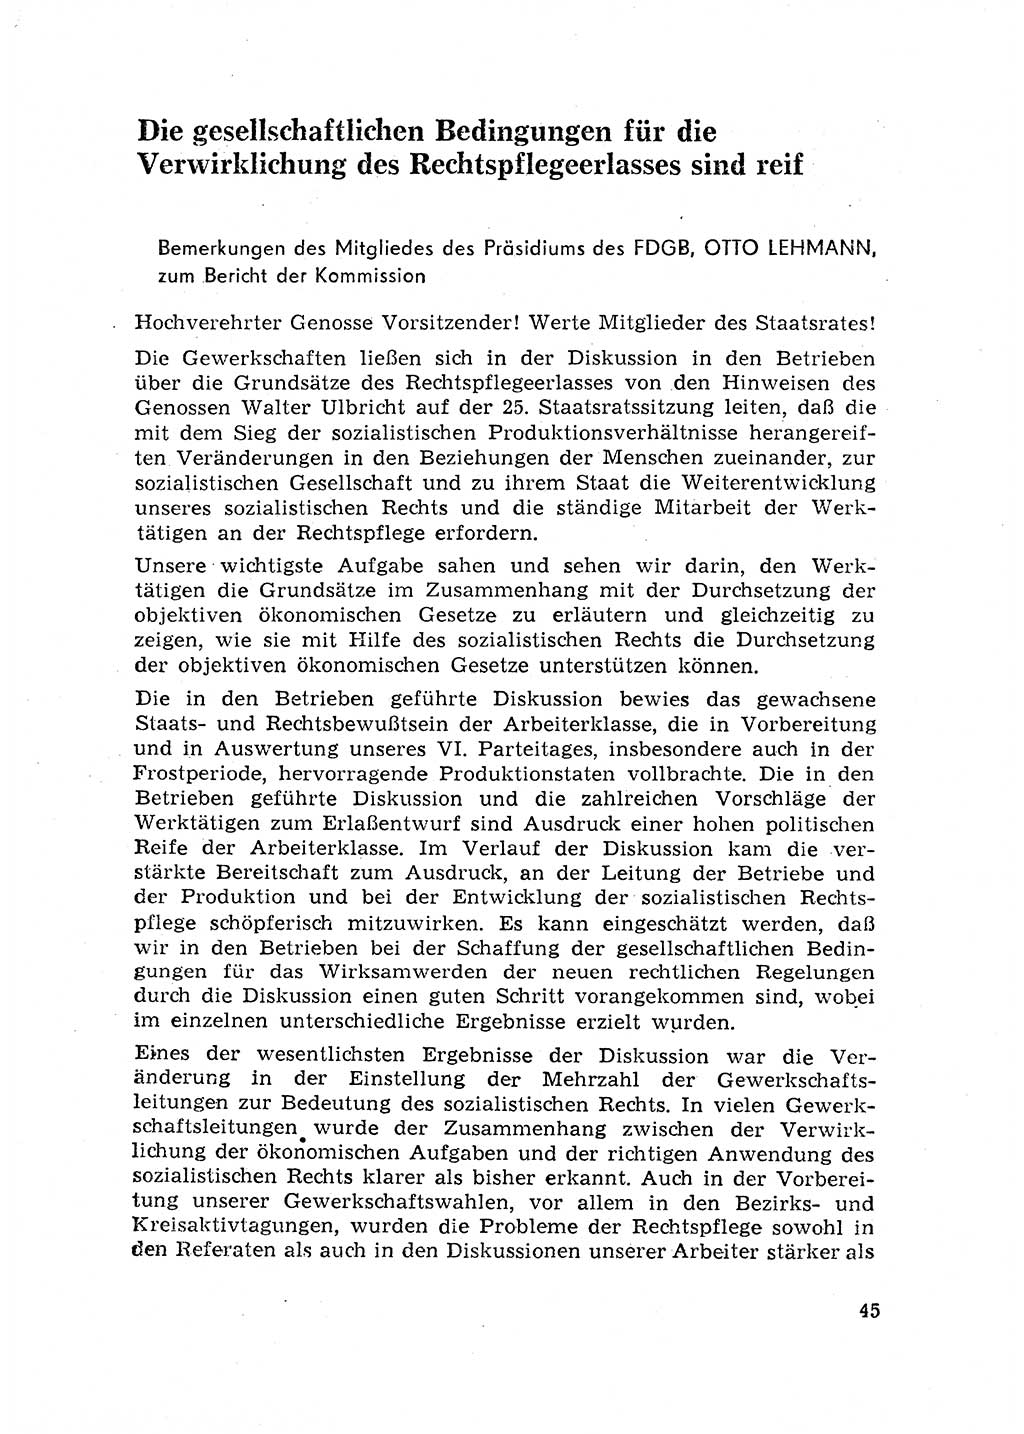 Rechtspflegeerlaß [Deutsche Demokratische Republik (DDR)] 1963, Seite 45 (R.-Pfl.-Erl. DDR 1963, S. 45)